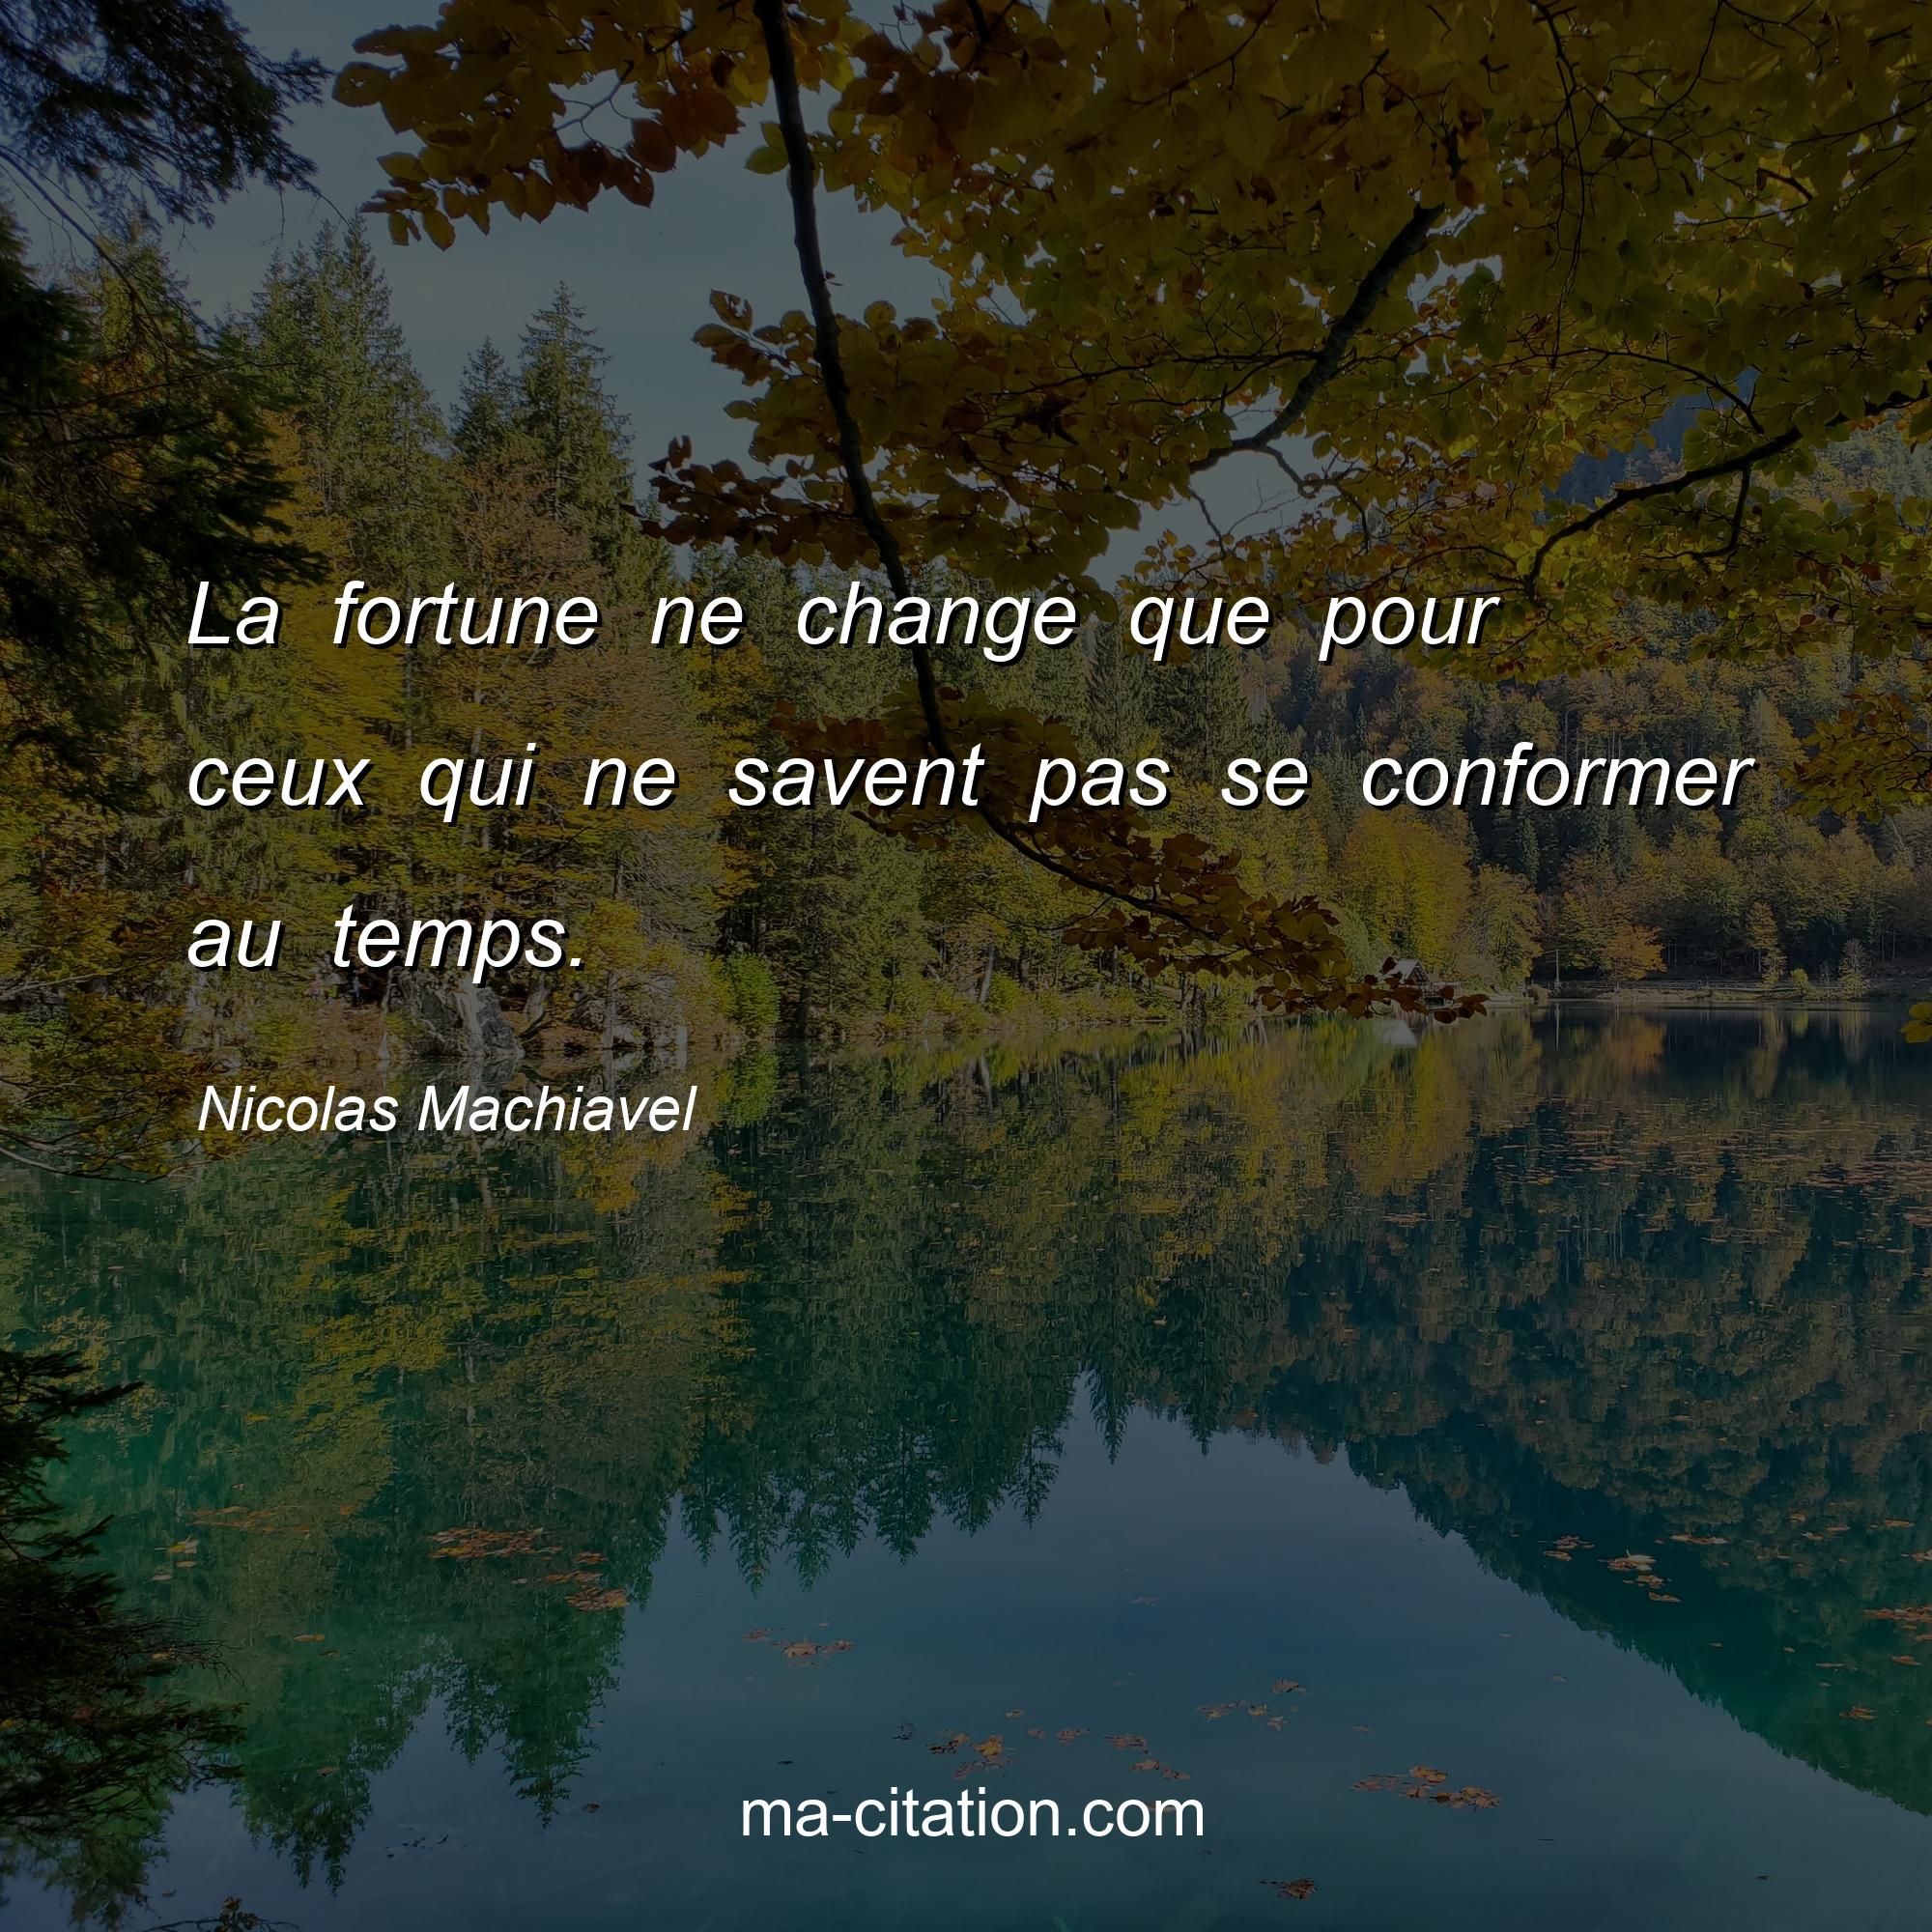 Nicolas Machiavel : La fortune ne change que pour ceux qui ne savent pas se conformer au temps.